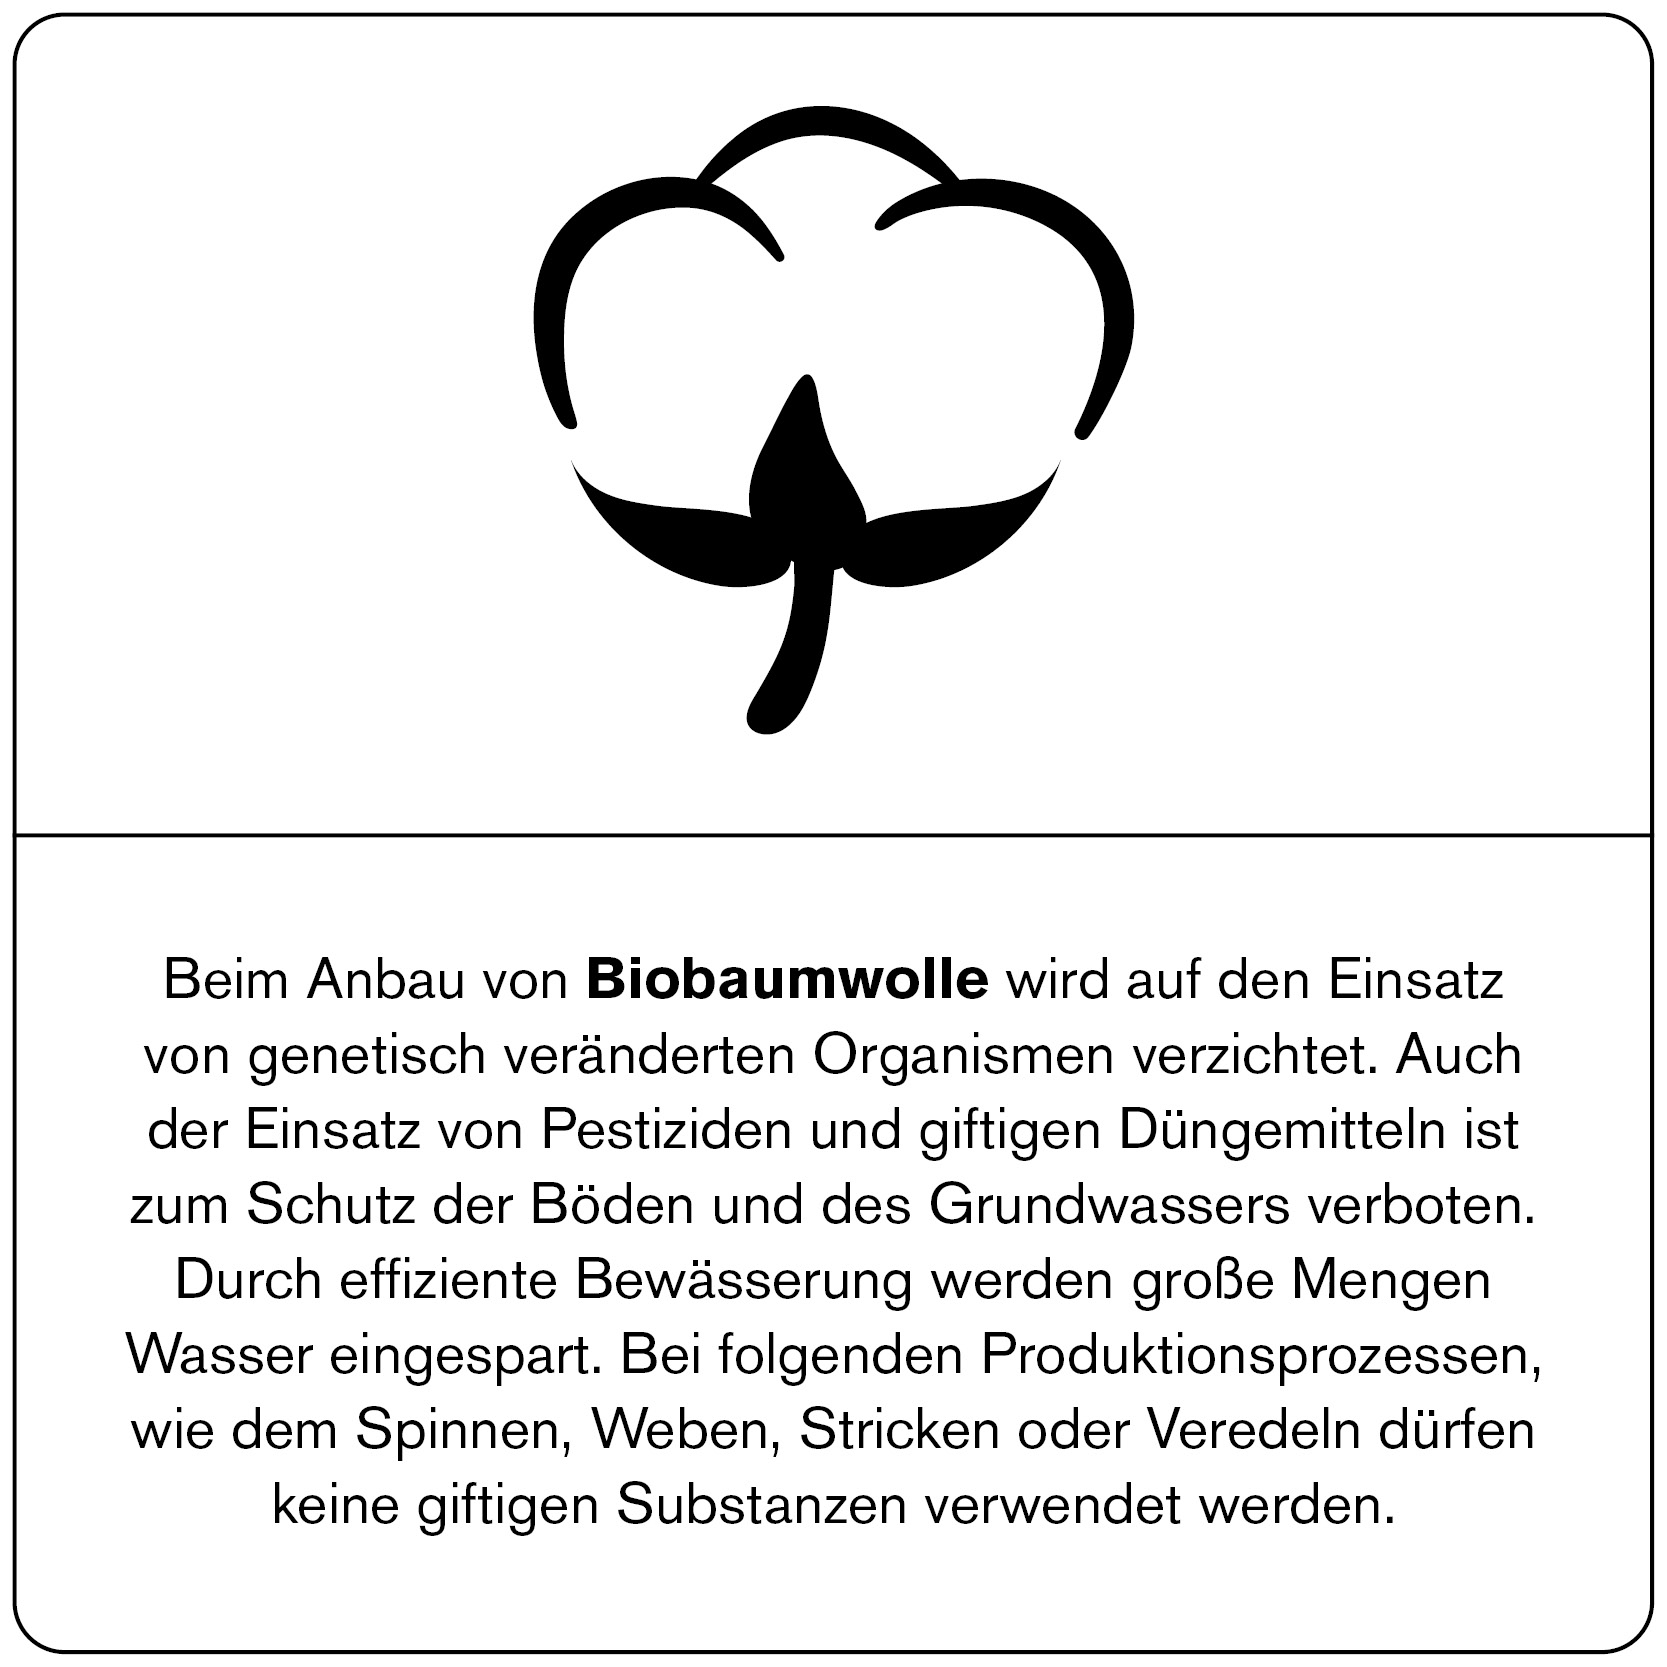 UVR Berlin: Hochwertige Mode aus Bio-Baumwolle - Nachhaltig, weich und umweltfreundlich